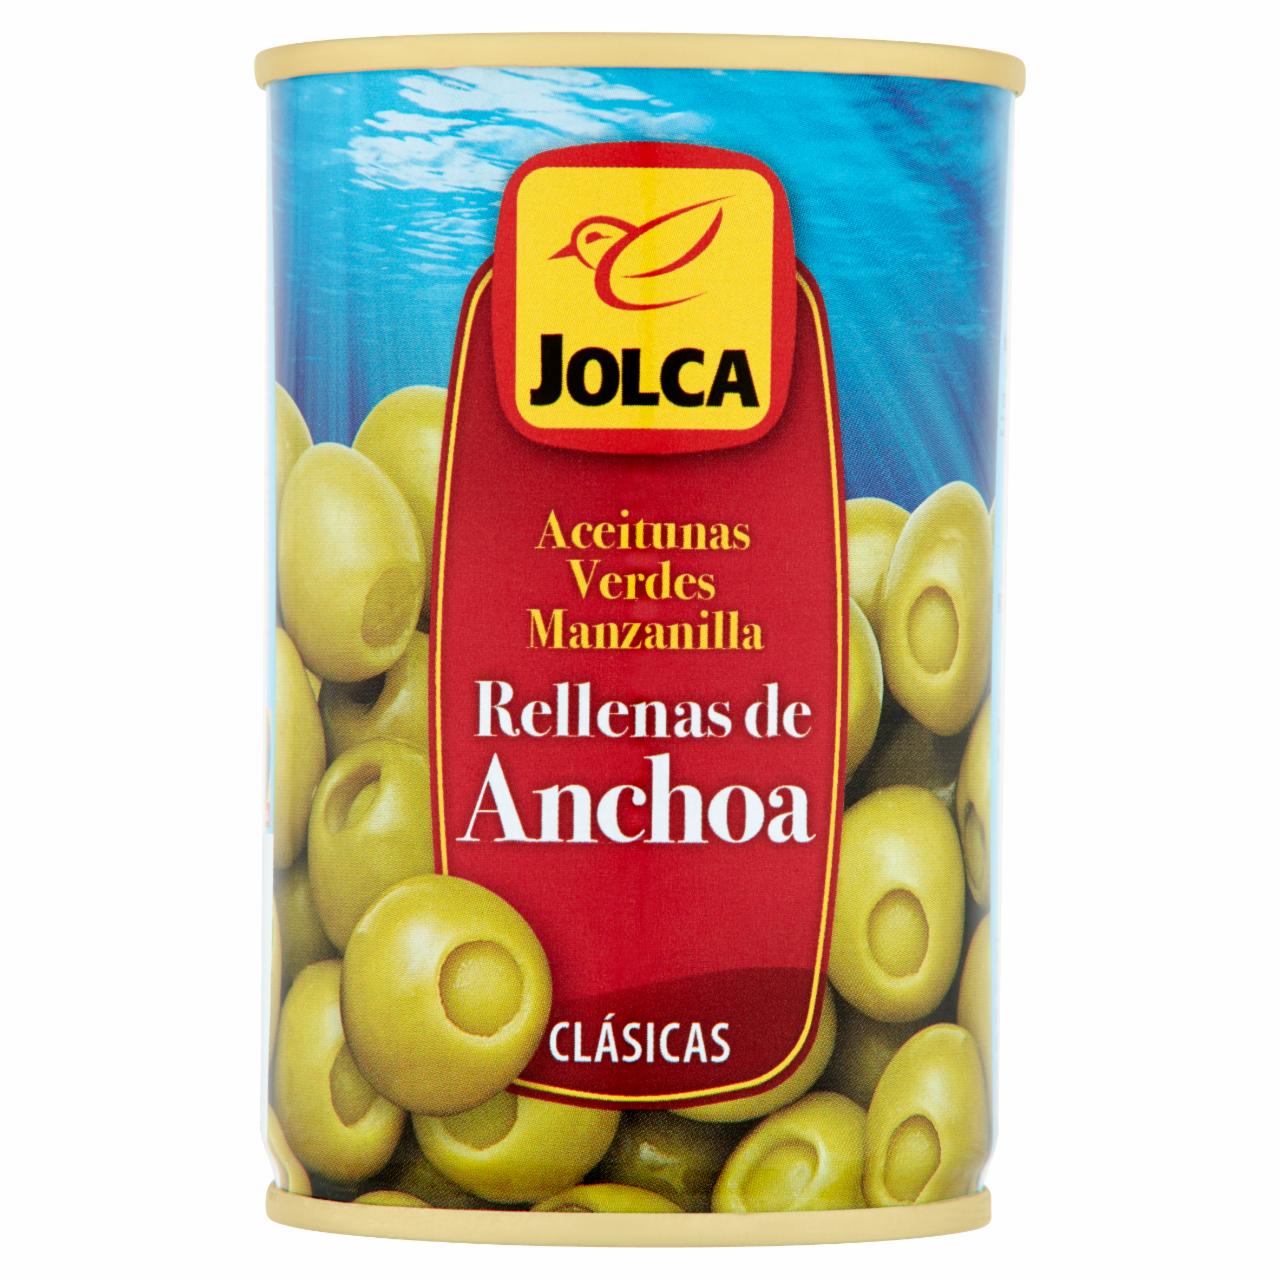 Zdjęcia - Jolca Oliwki zielone nadziewane anchois 300 g